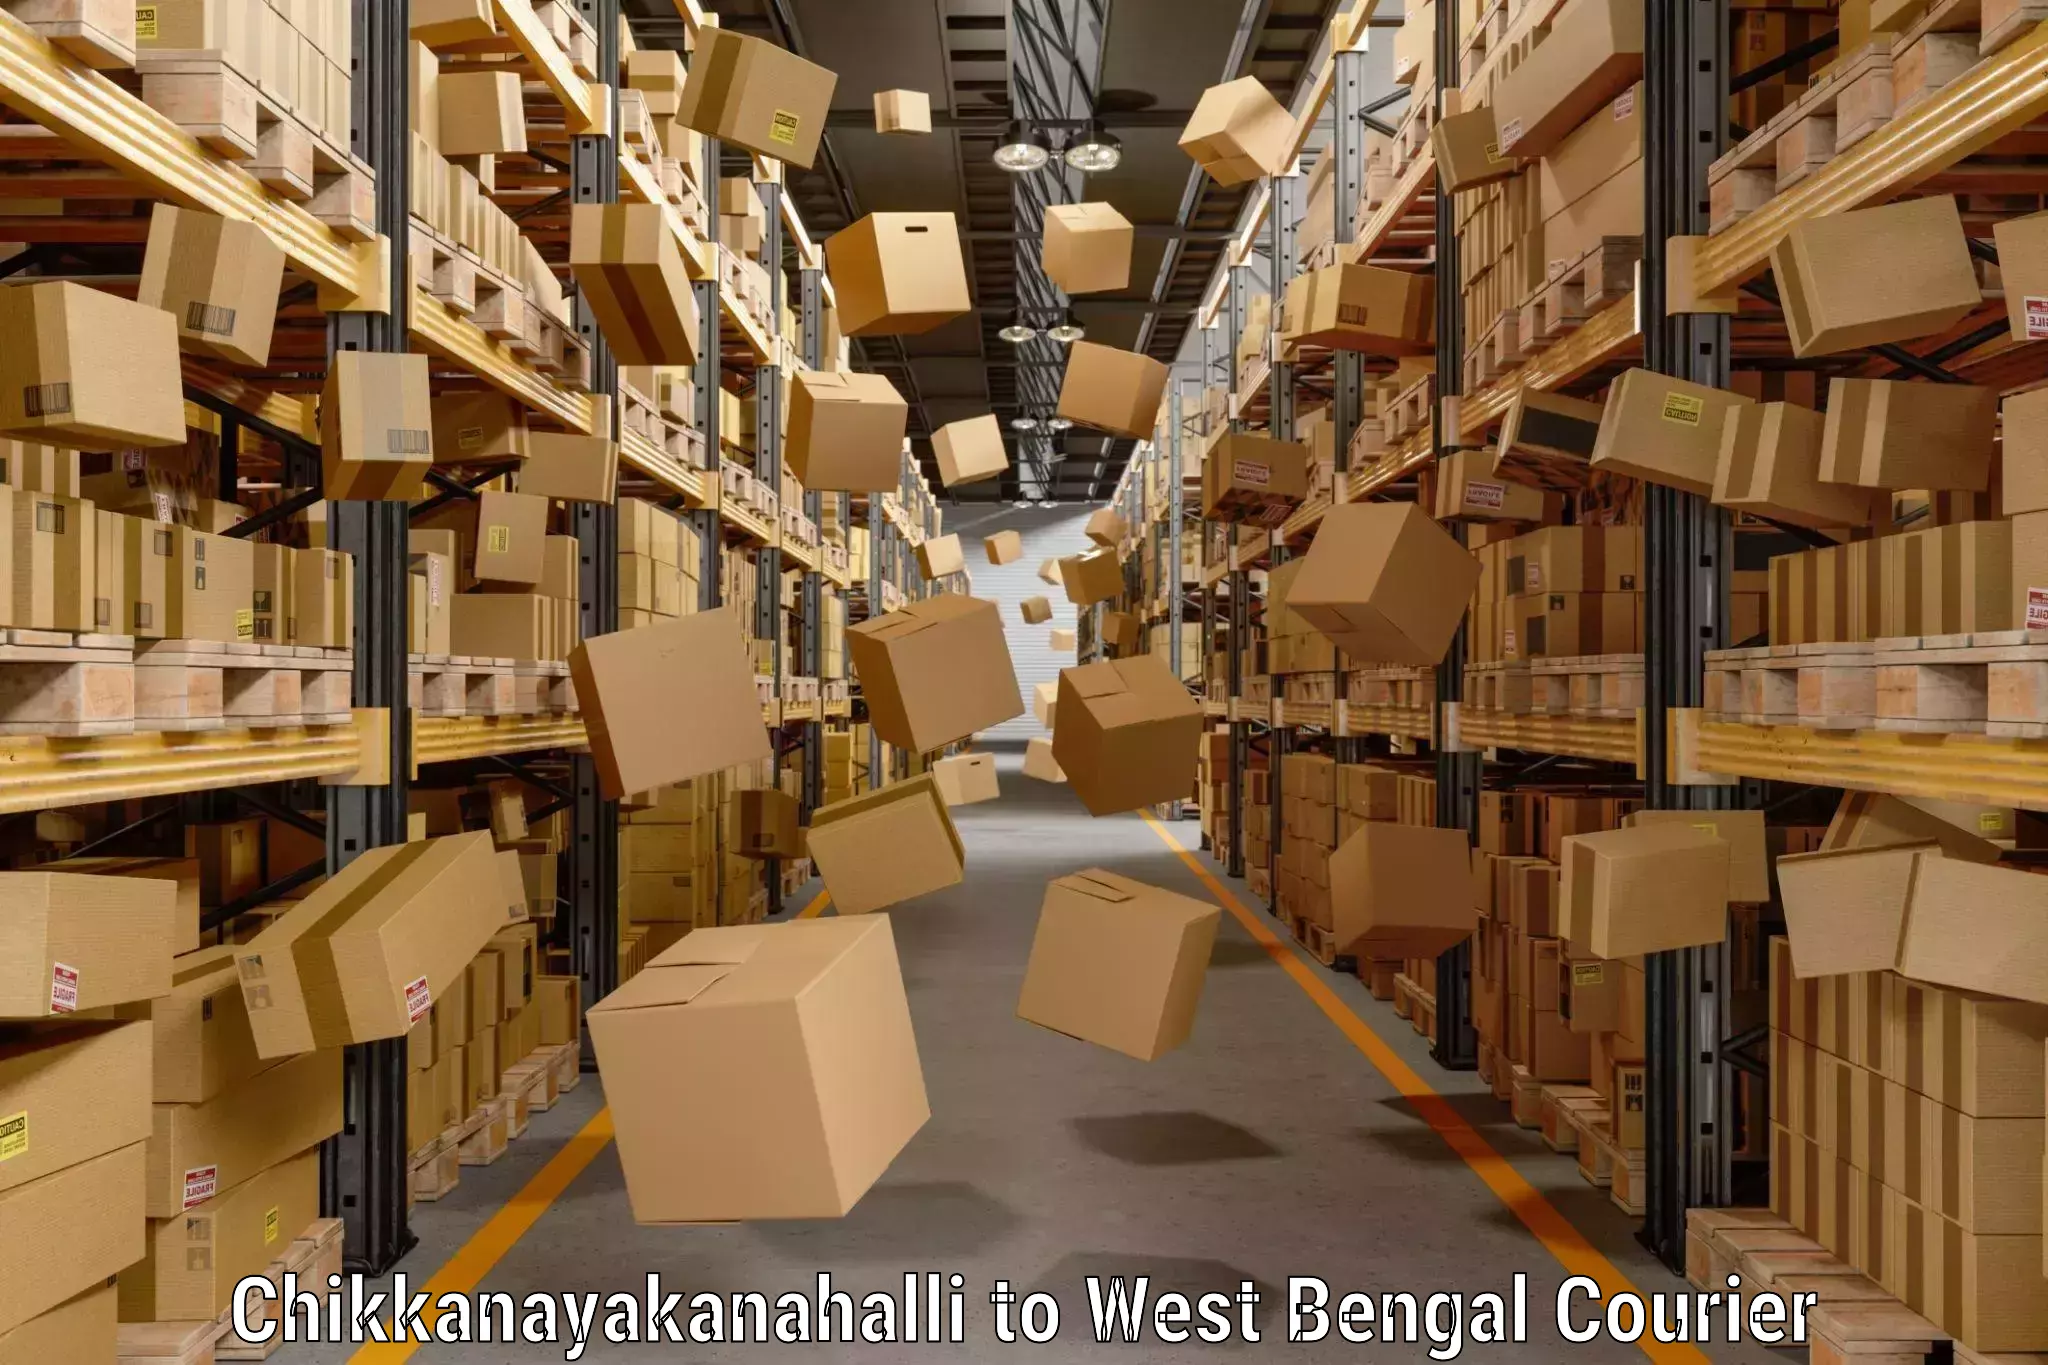 Baggage courier guide Chikkanayakanahalli to West Bengal